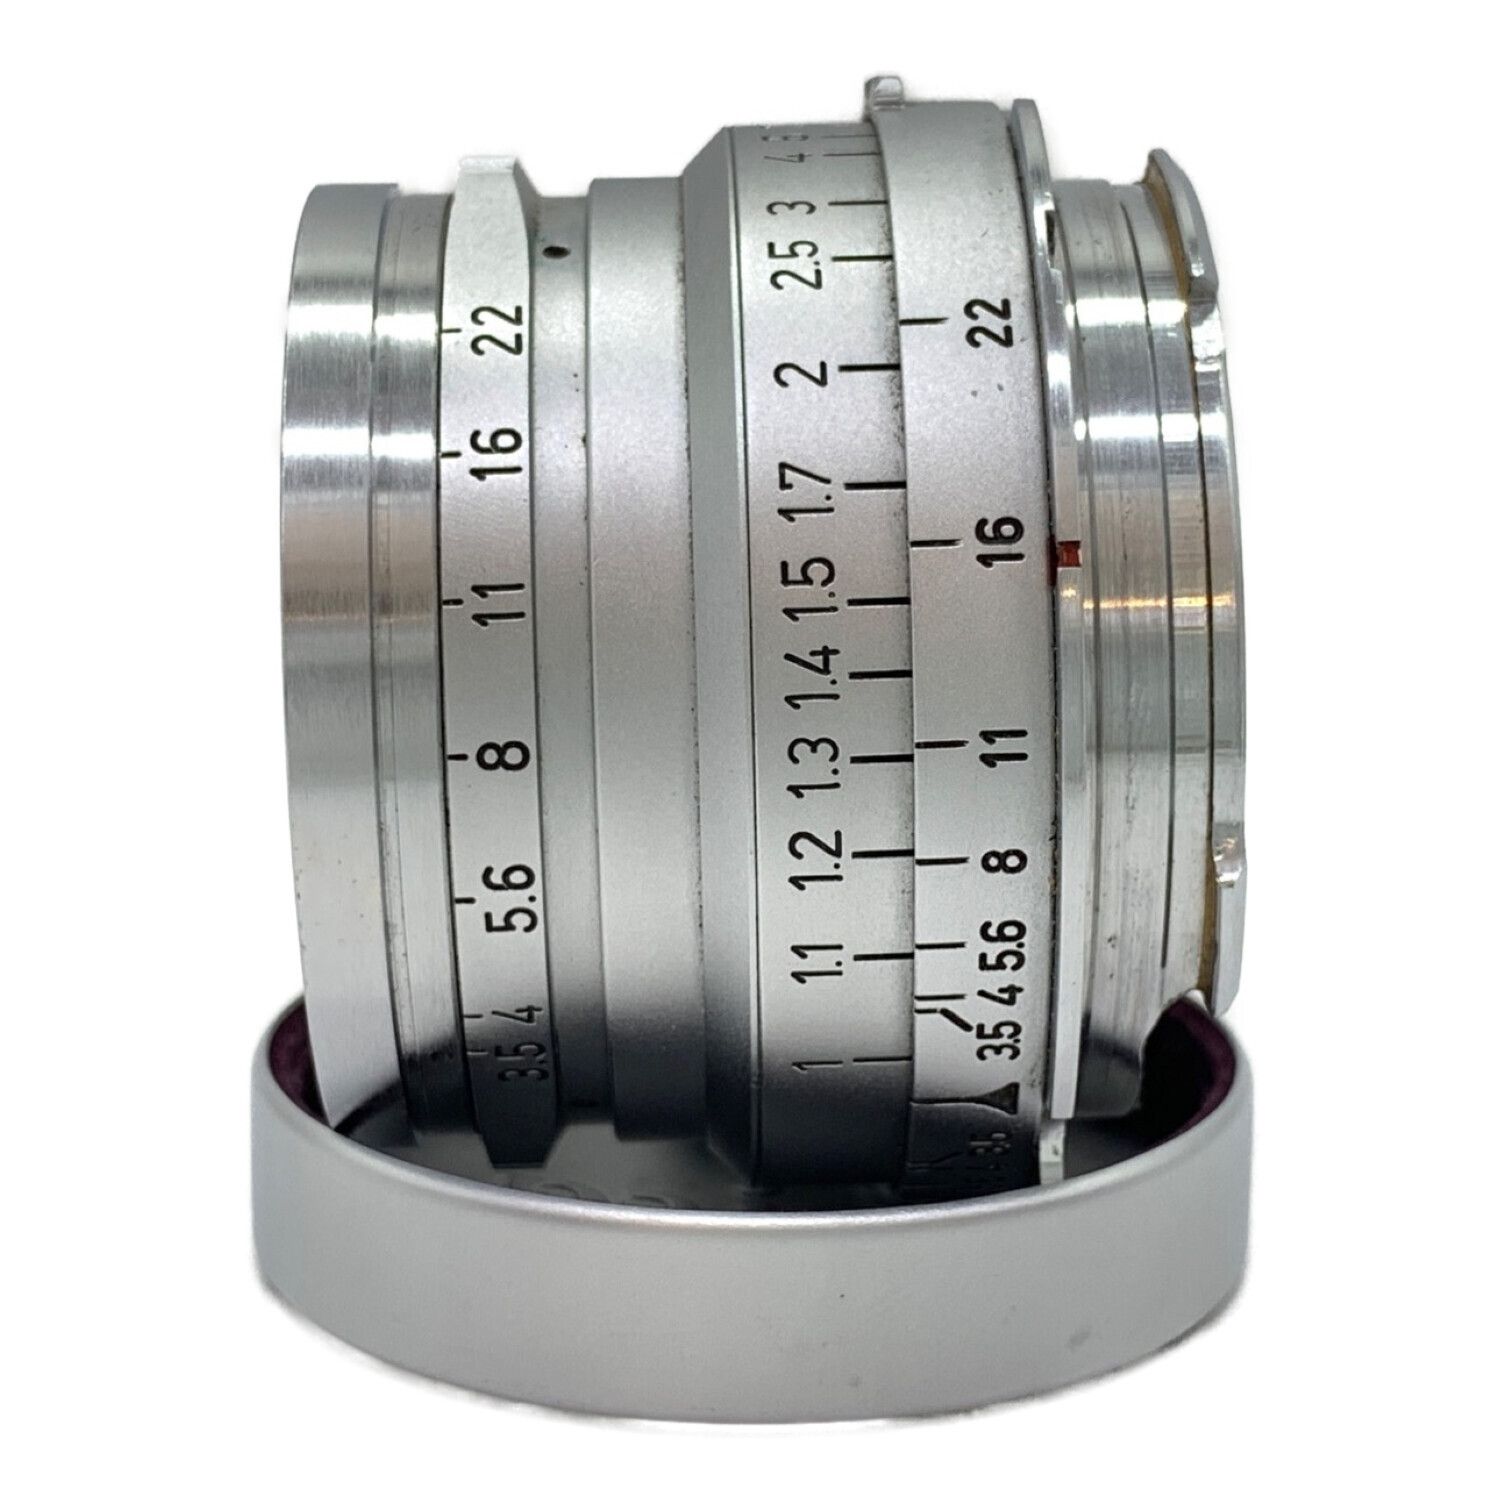 Leica (ライカ) 単焦点レンズ Summaron 35mm F3.5 Mマウント ...